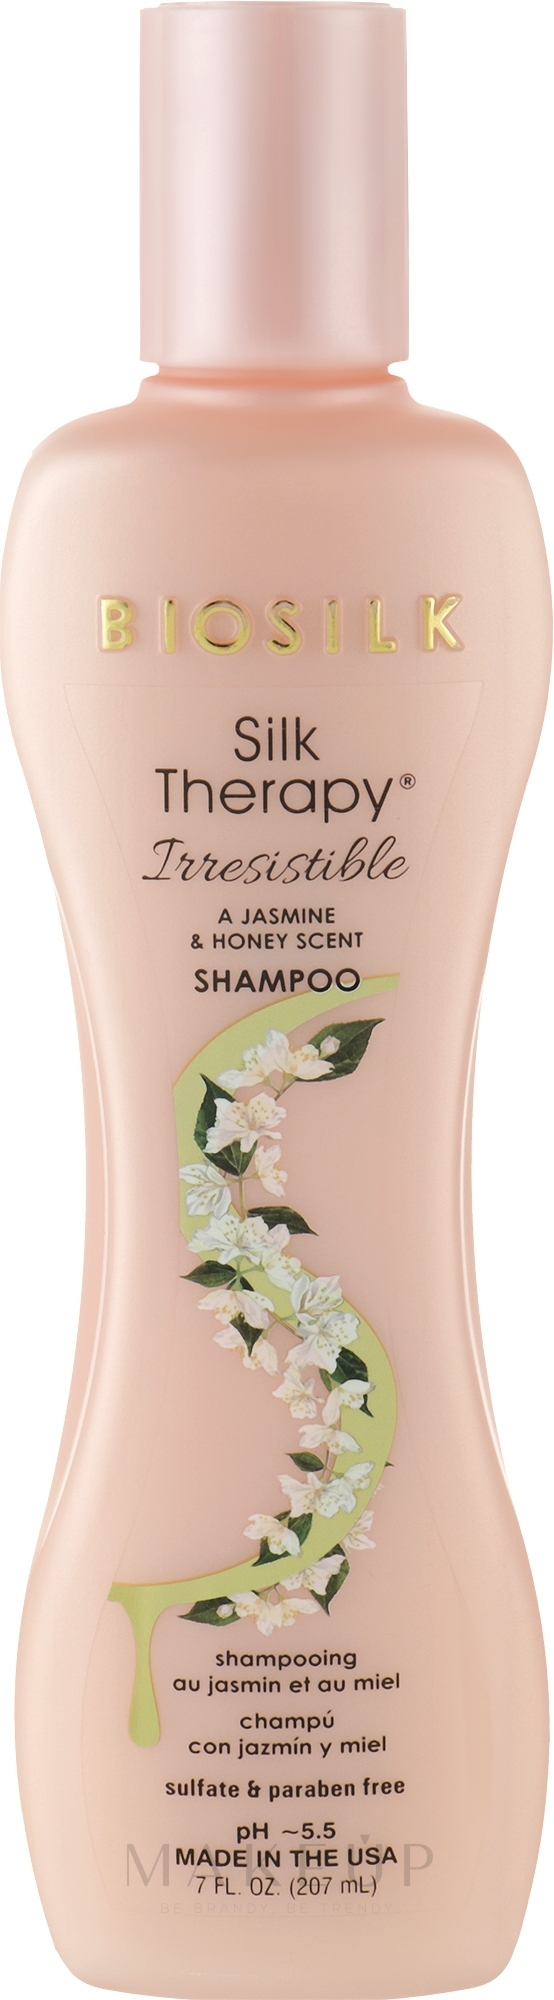 Seidentherapie-Shampoo mit Jasmin- und Honigduft - Biosilk Silk Therapy Irresistible Shampoo — Bild 207 ml